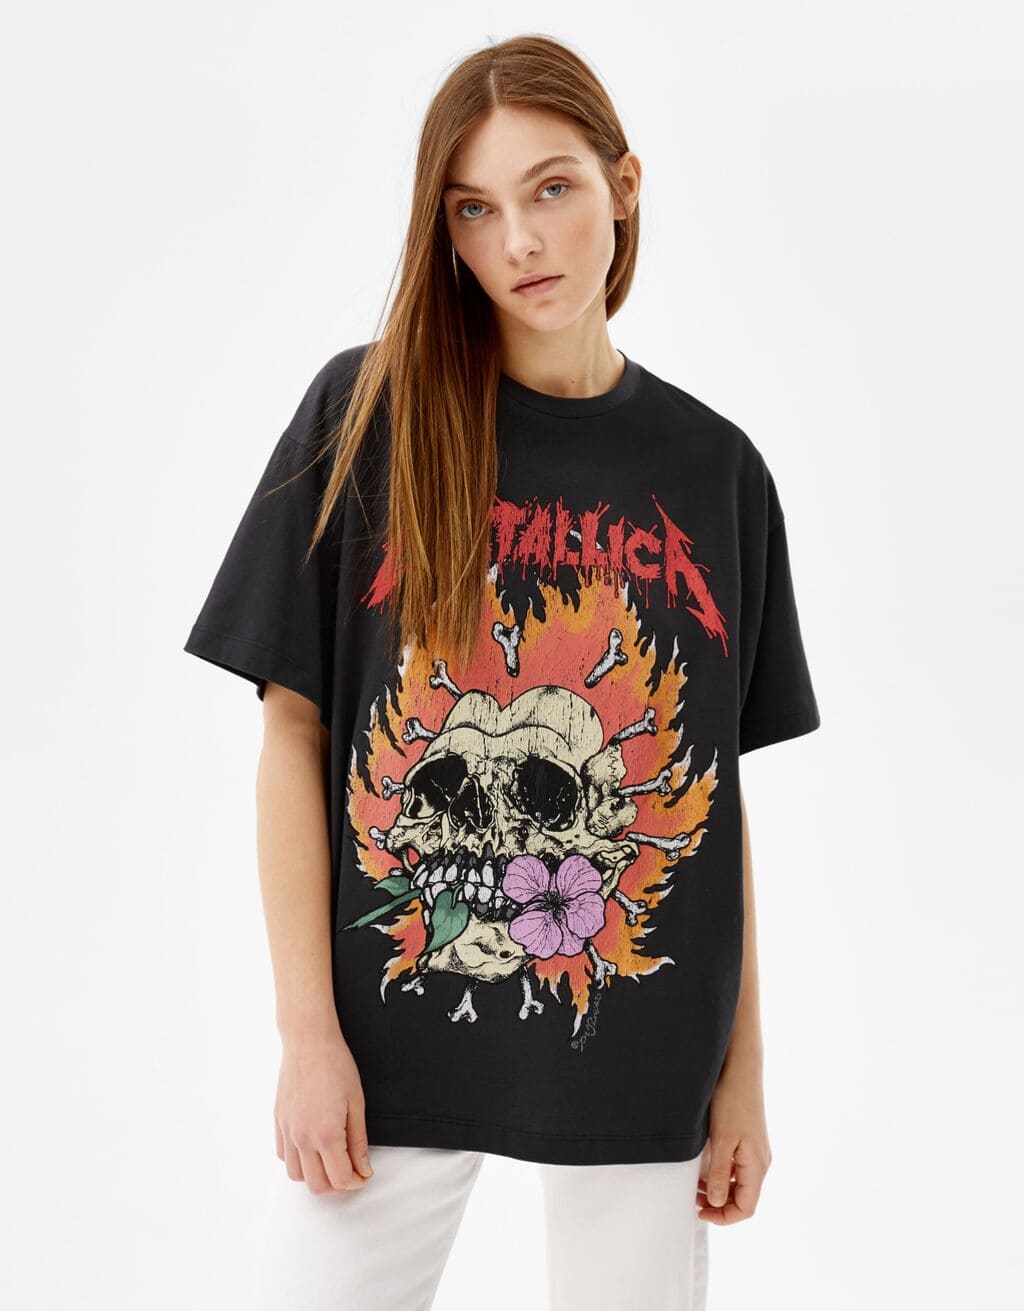 Leche girar Gaviota Las camisetas más chulas de Bershka: Rolling Stones, Metallica e Iron Maiden